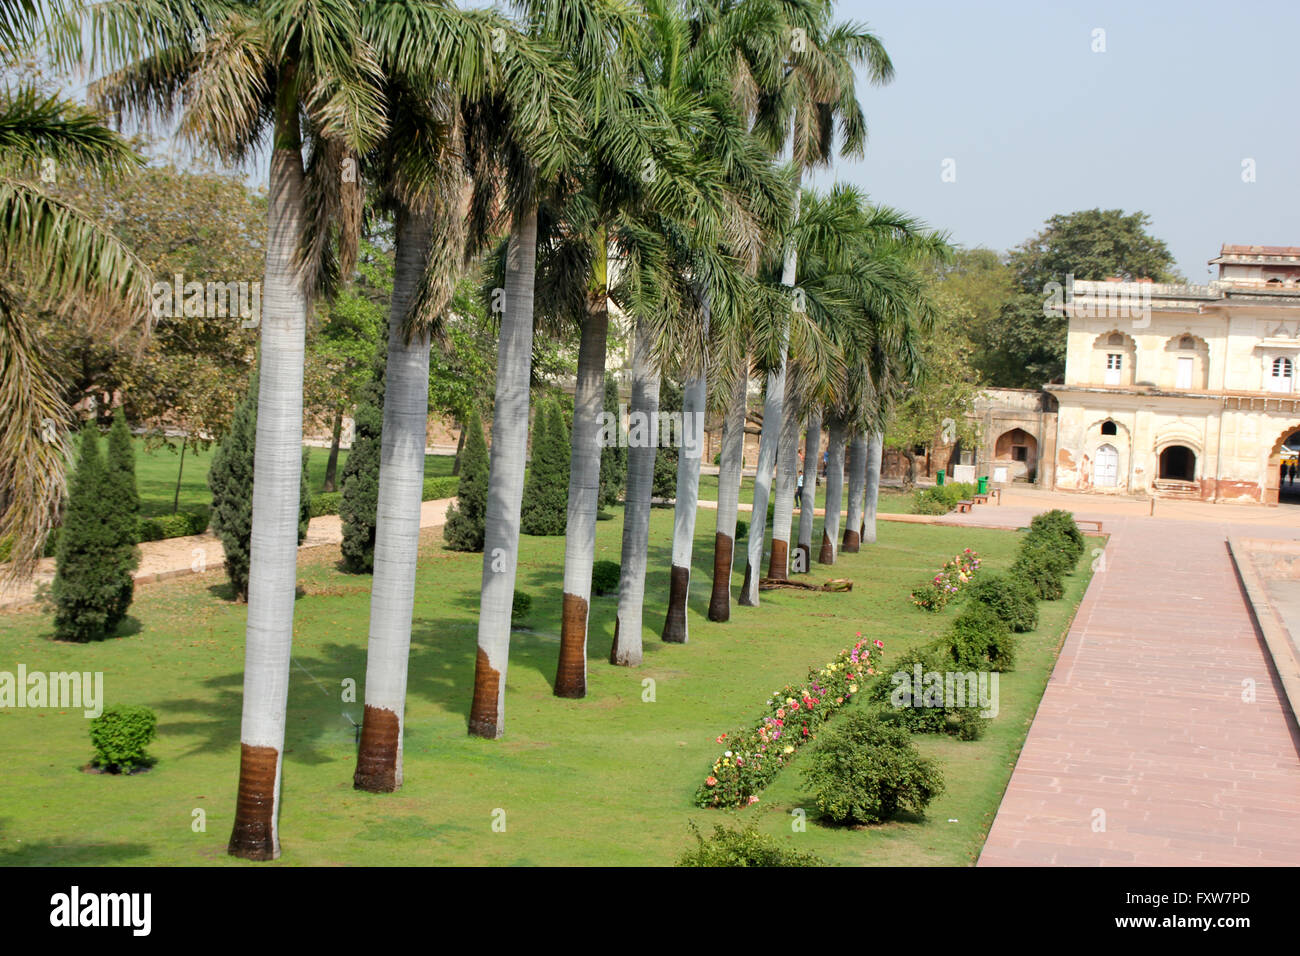 Reihe von Royal Palmen und zentralen Kanal in der Safdarjung Gartengrab, New Delhi, Indien, zwei sagenumwobenen Grab auf einer erhöhten Plattform Stockfoto